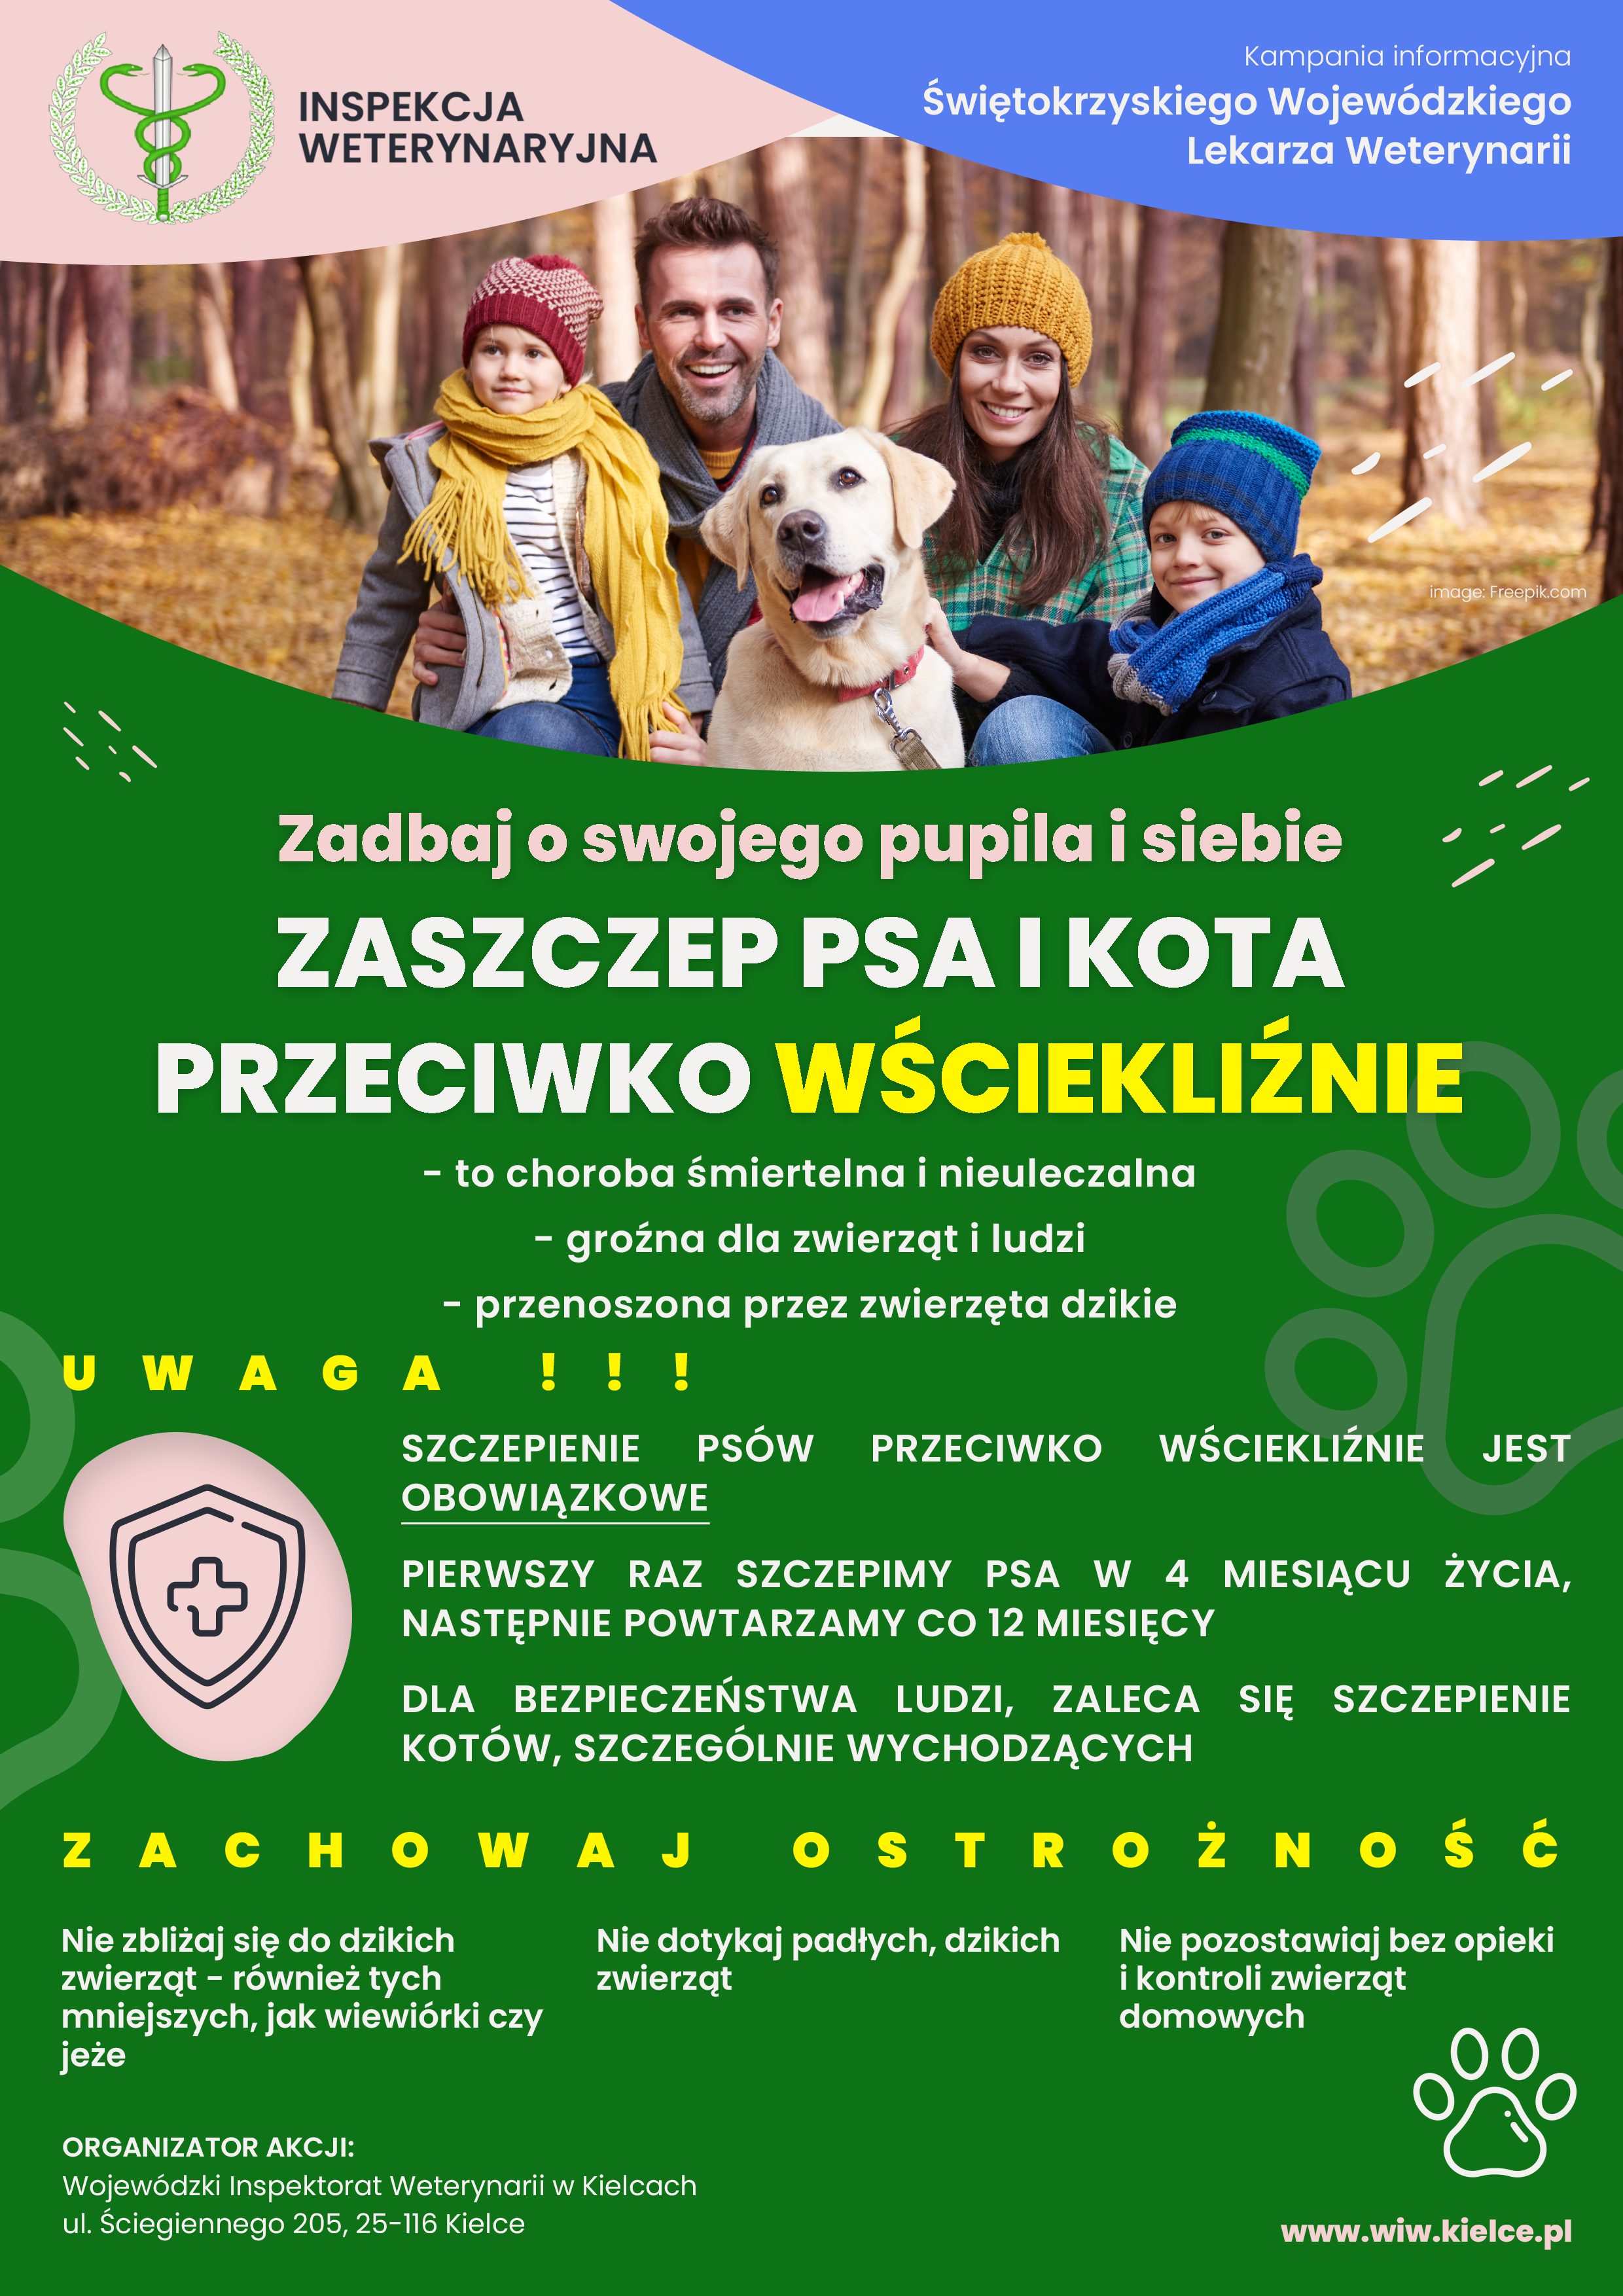 Plakat informacyjny: Świętokrzyski Wojewódzki Lekarz Weterynarii apeluje o regularne szczepienia psów i kotów przeciwko wściekliźnie które jest jedynym skutecznym sposobem zapobiegania wystąpieniu i rozprzestrzenianiu się wścieklizny.